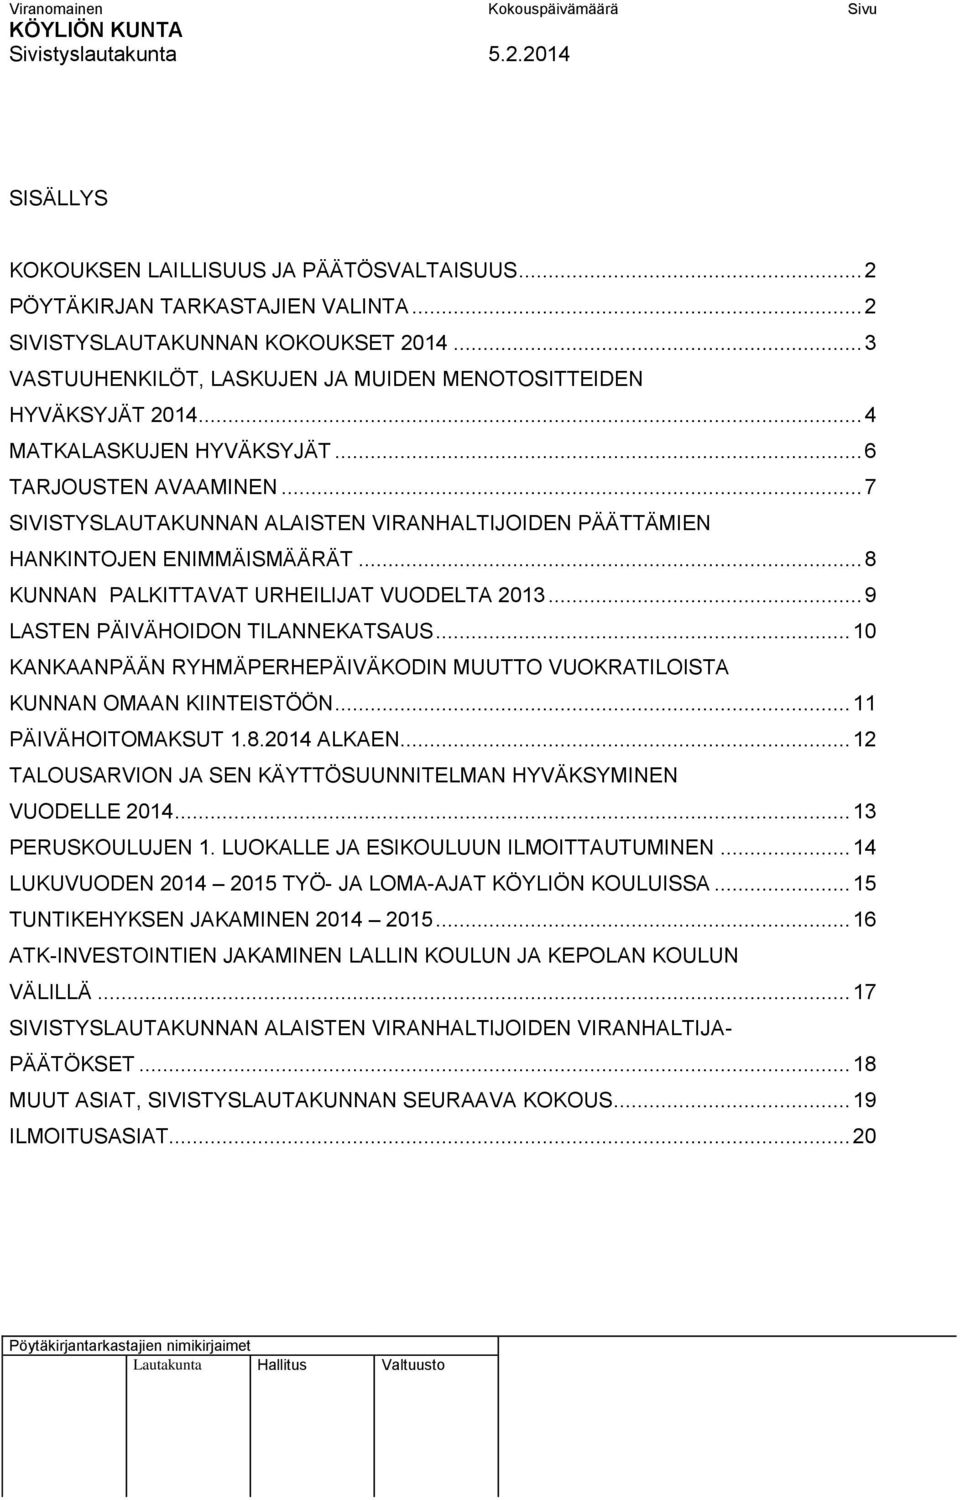 .. 7 SIVISTYSLAUTAKUNNAN ALAISTEN VIRANHALTIJOIDEN PÄÄTTÄMIEN HANKINTOJEN ENIMMÄISMÄÄRÄT... 8 KUNNAN PALKITTAVAT URHEILIJAT VUODELTA 2013... 9 LASTEN PÄIVÄHOIDON TILANNEKATSAUS.